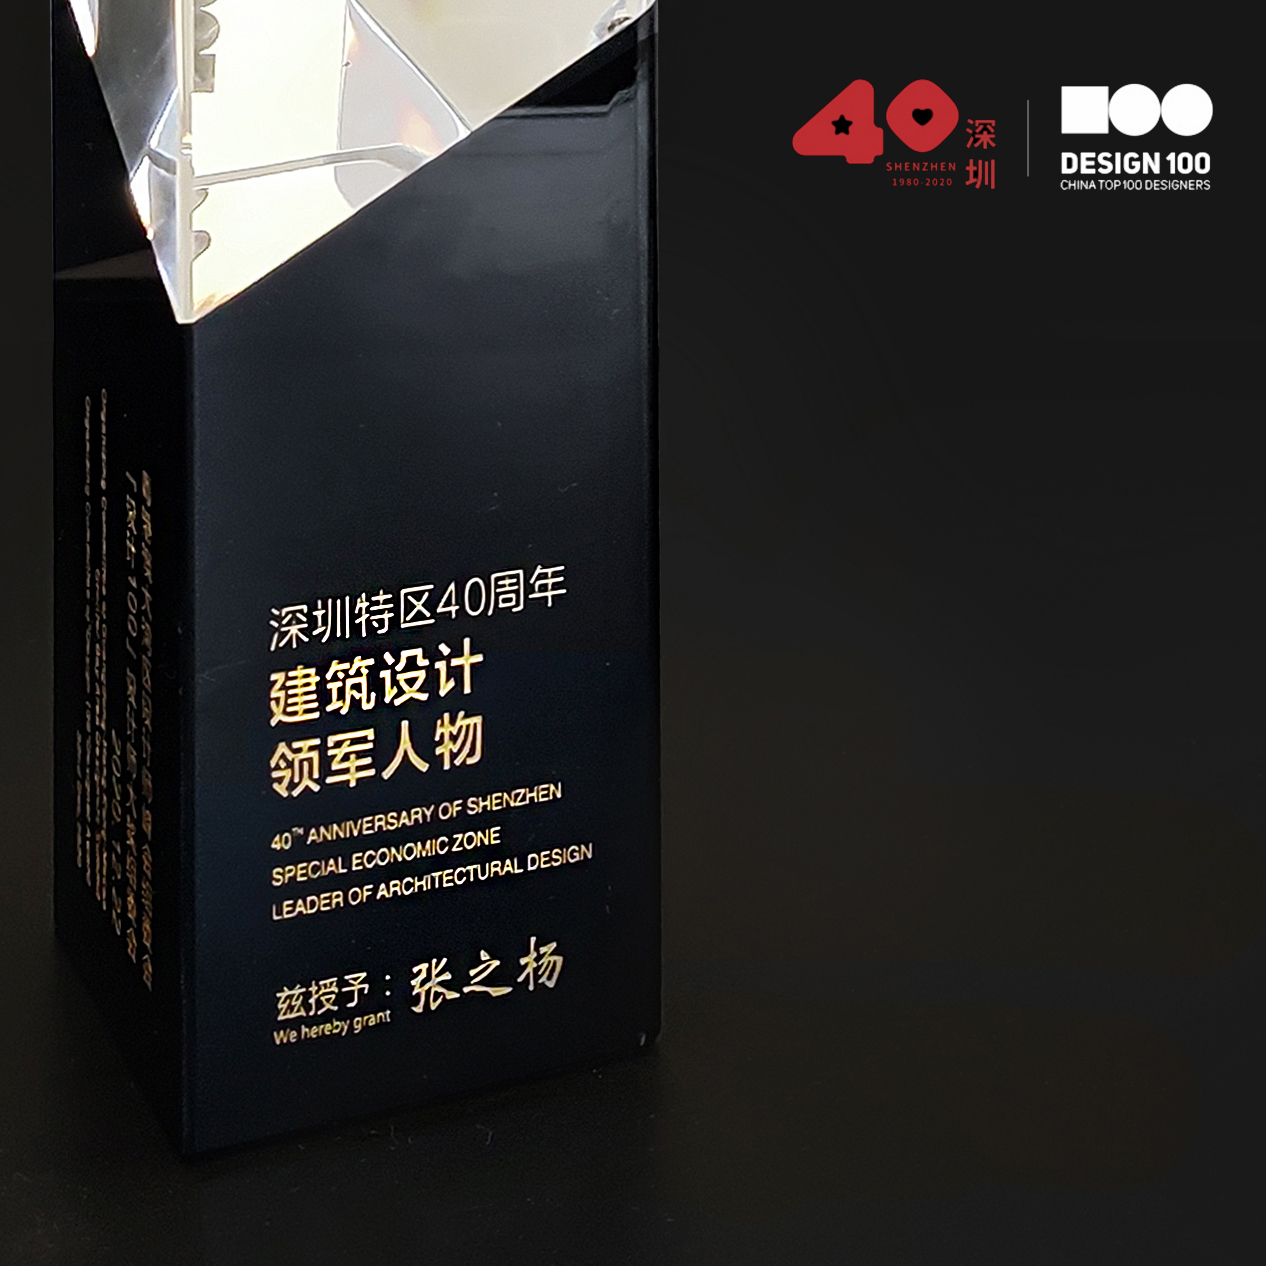 张之杨获得深圳设计40周年荣誉